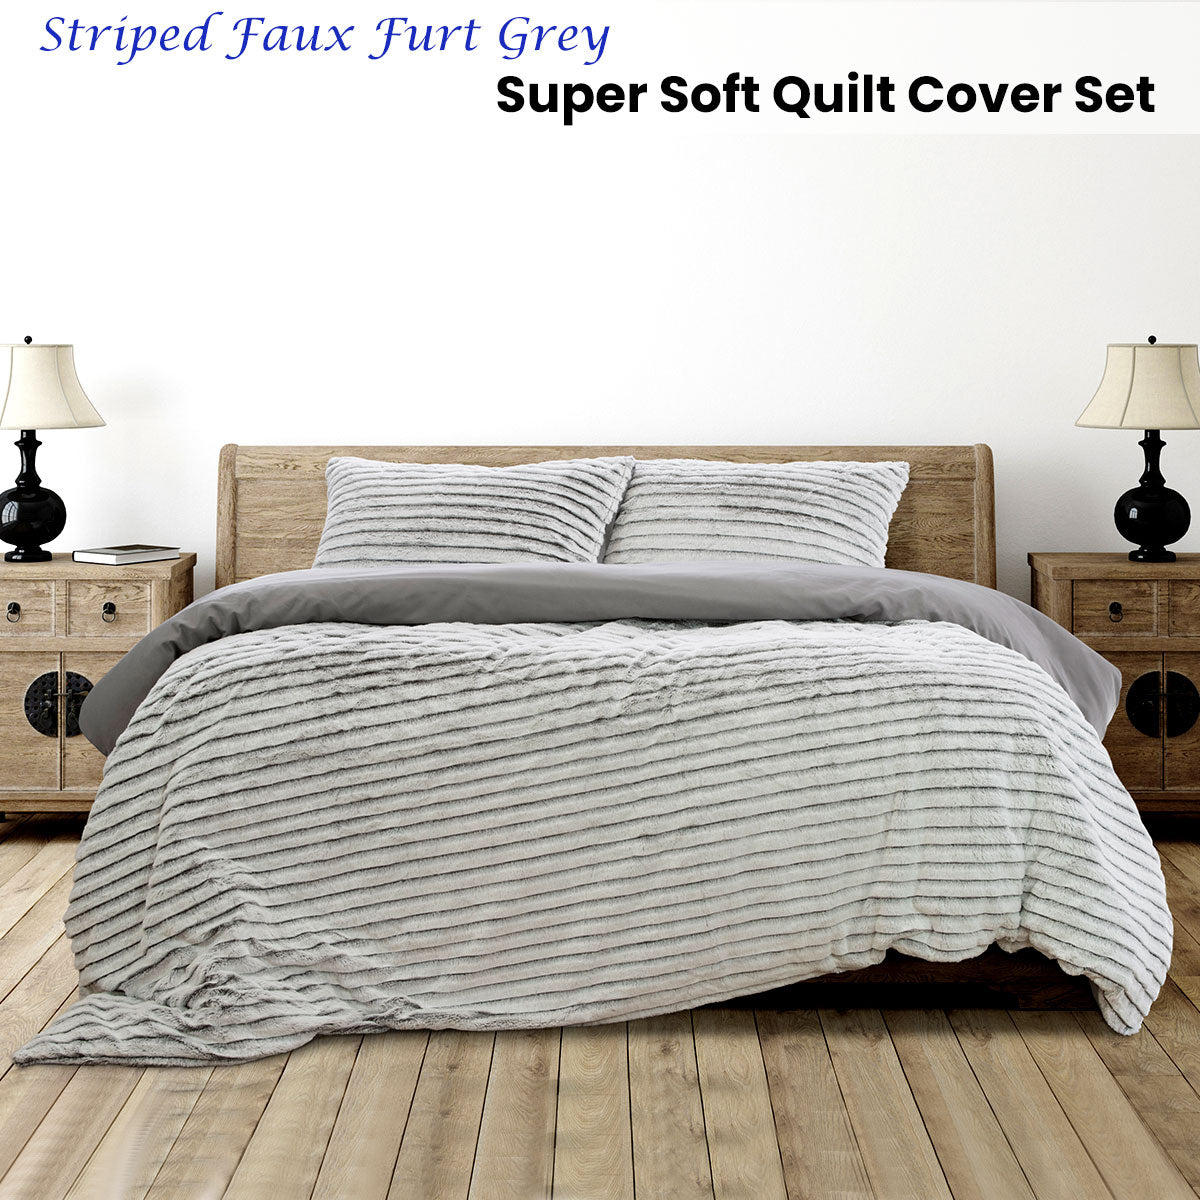 KING Faux Fur Super Soft Quilt Cover Set - Grey